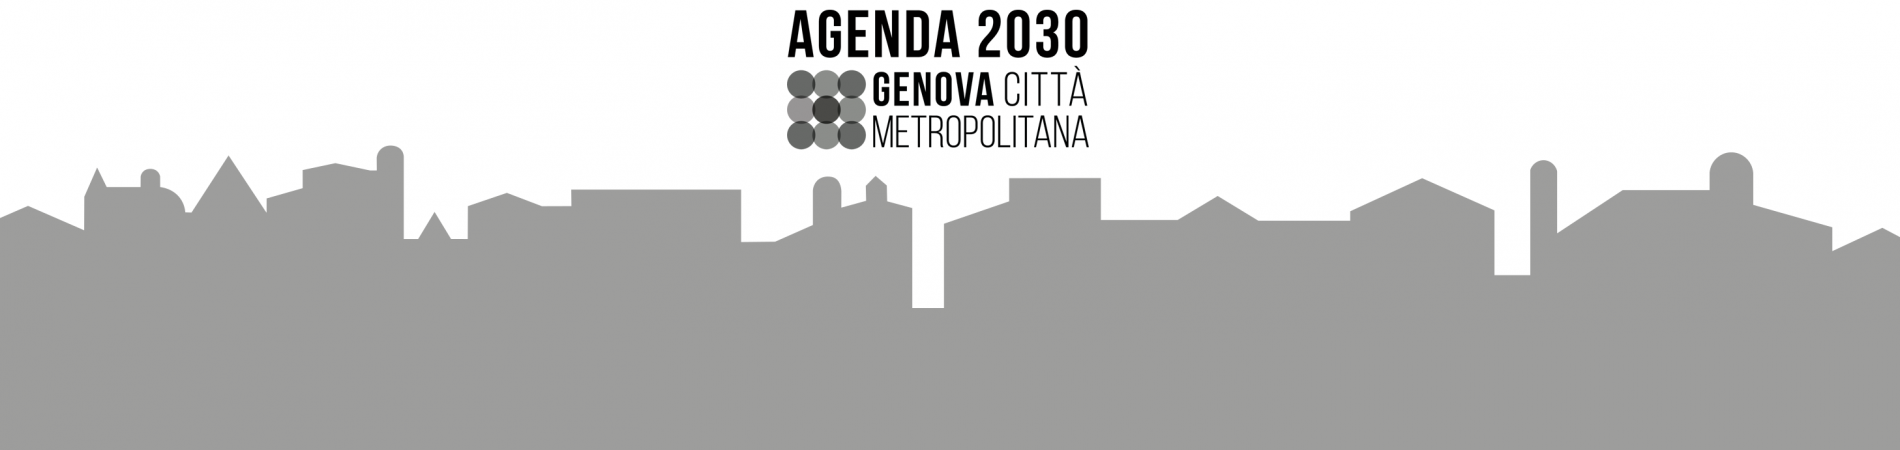 Agenda Metropolitana per lo sviluppo sostenibile